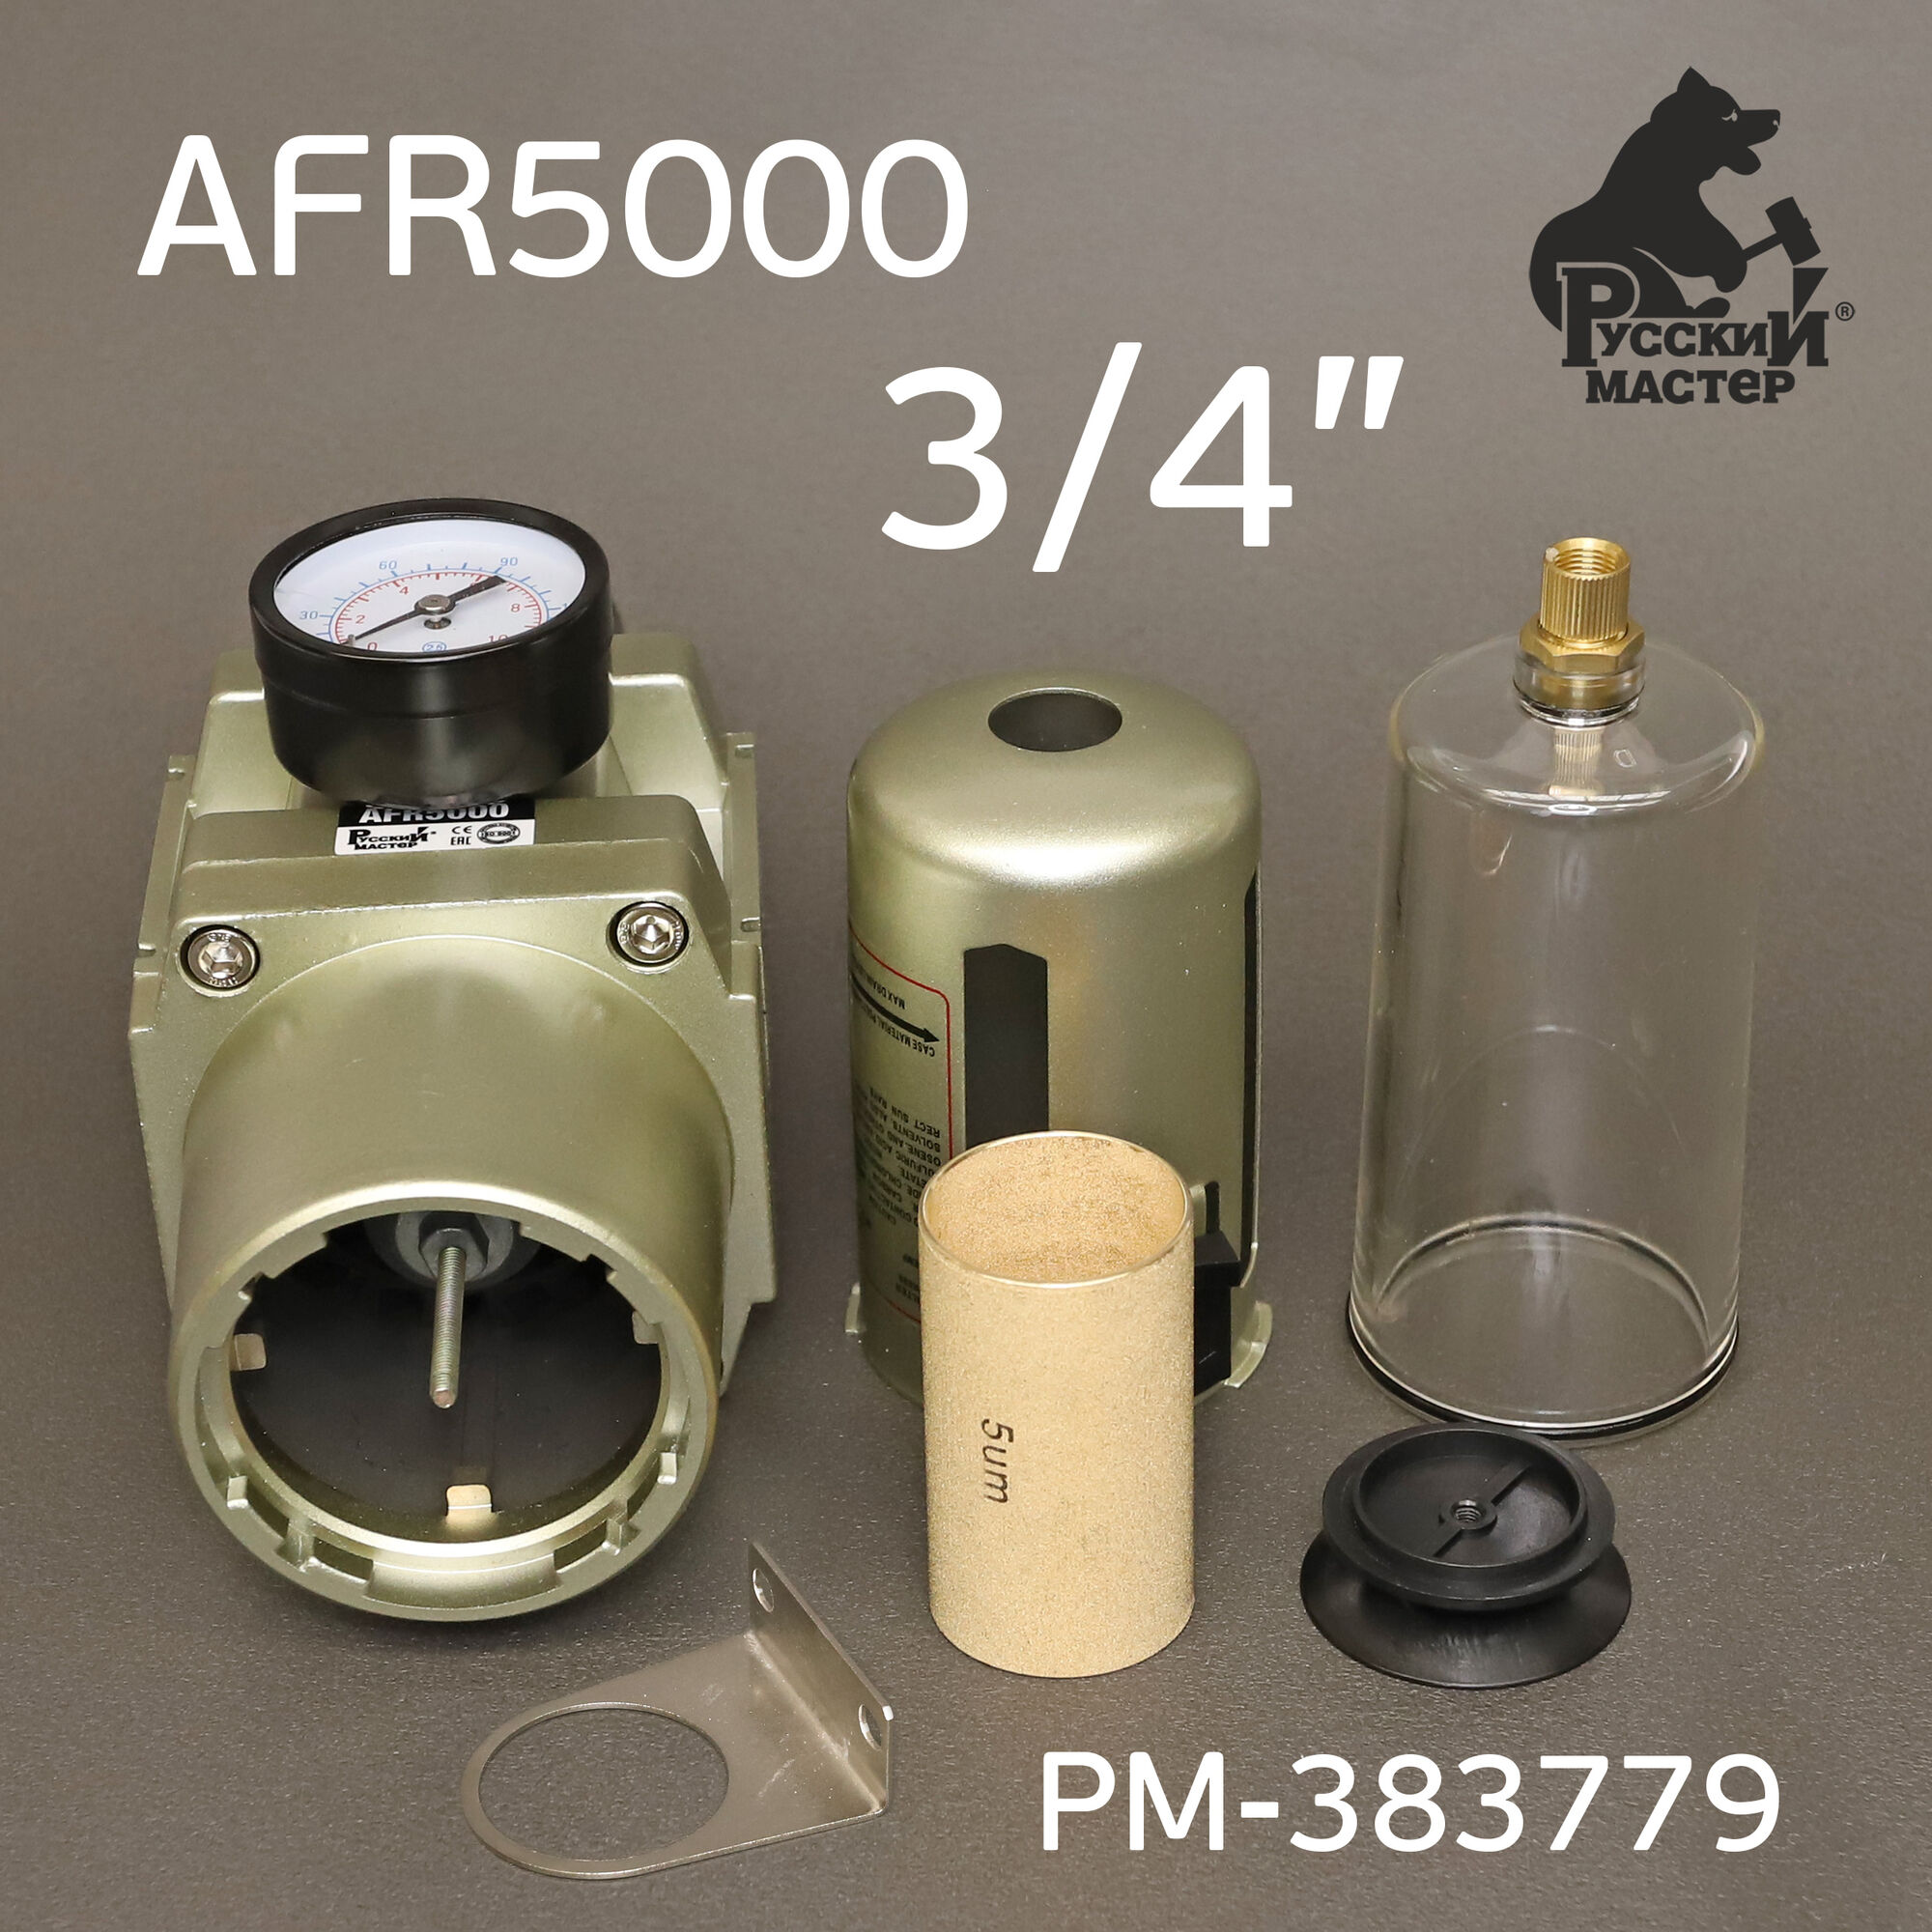 Фильтр-редуктор 3/4" AFR5000 Русский Мастер РМ-383779 #3